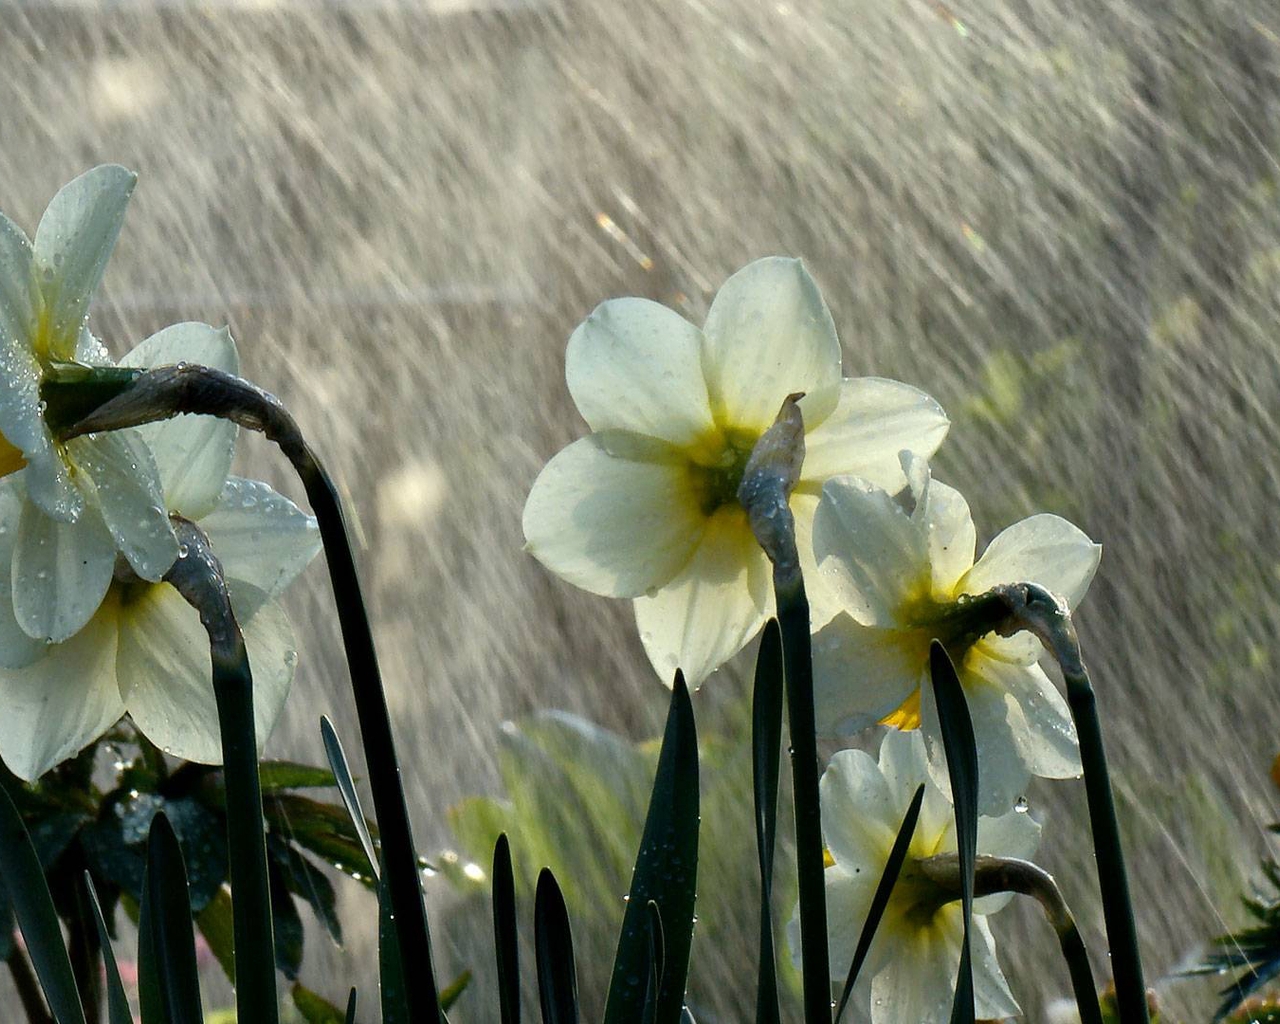 Картинка: Нарциссы, цветы, белые, стебли, дождь, капли